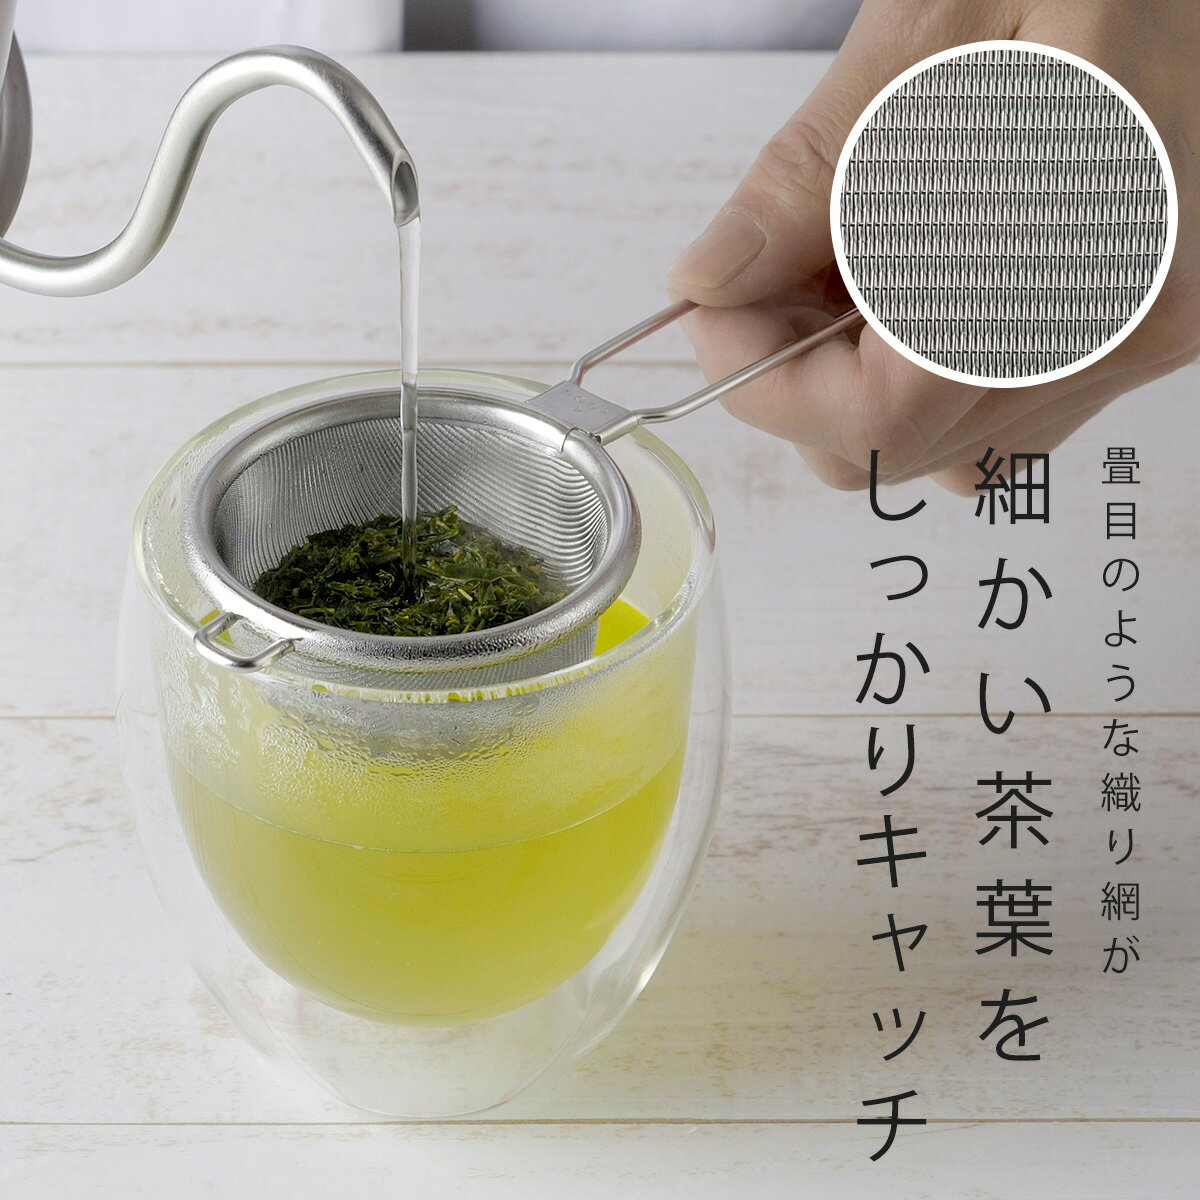 茶考具 茶葉を出さない 茶こし 小日本製 ステ...の紹介画像3